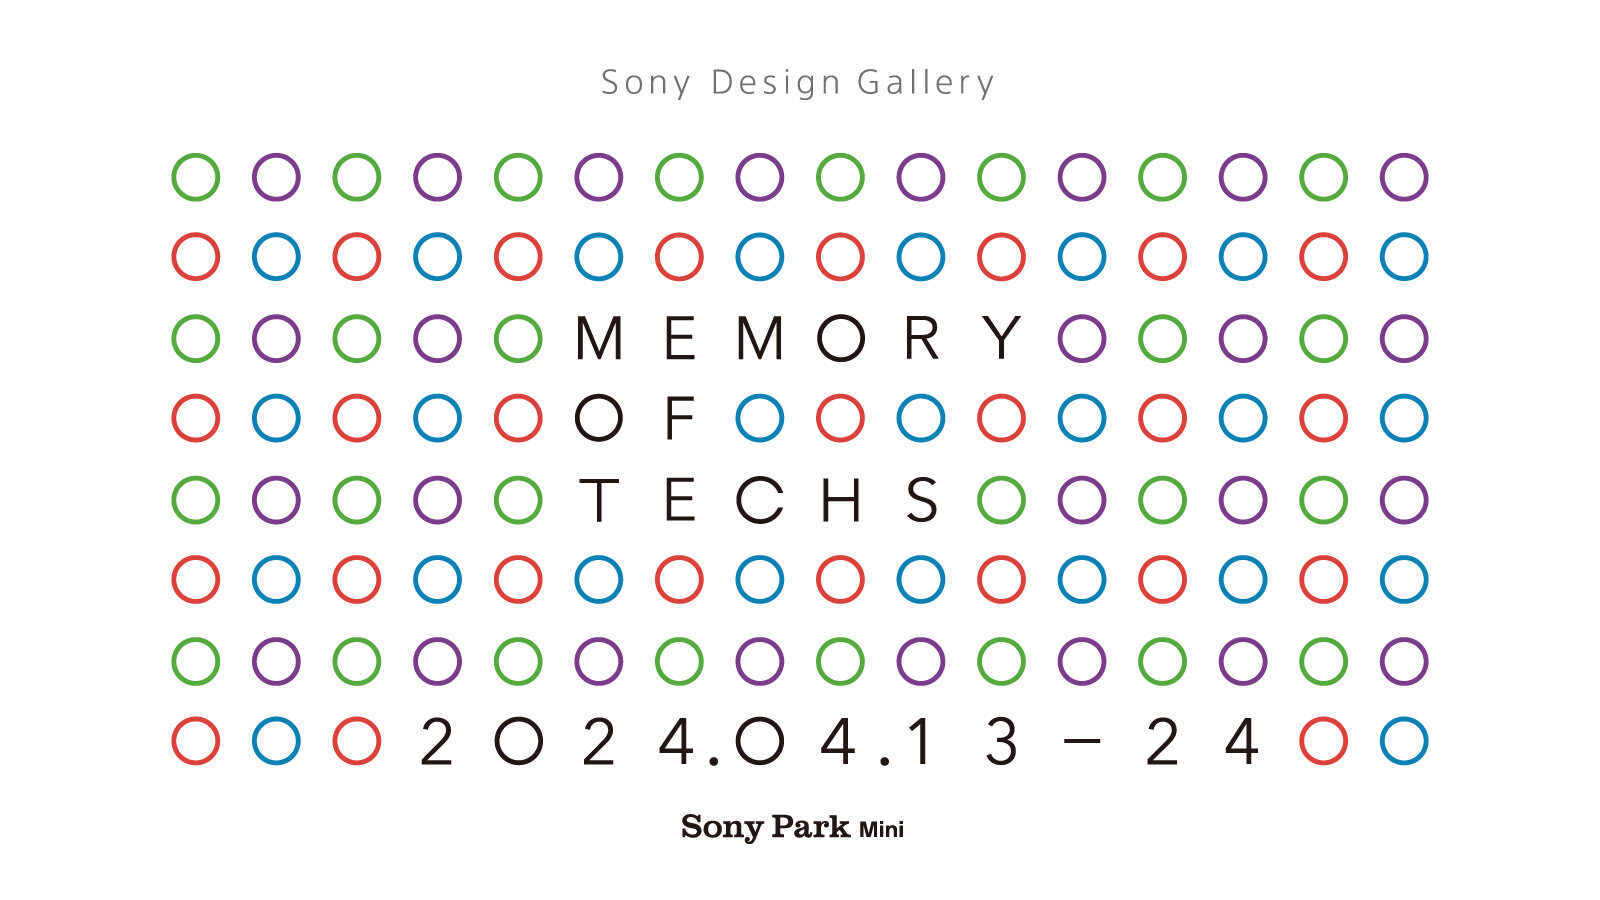 ソニーのデザイン部門が「Sony Design Gallery」を開催